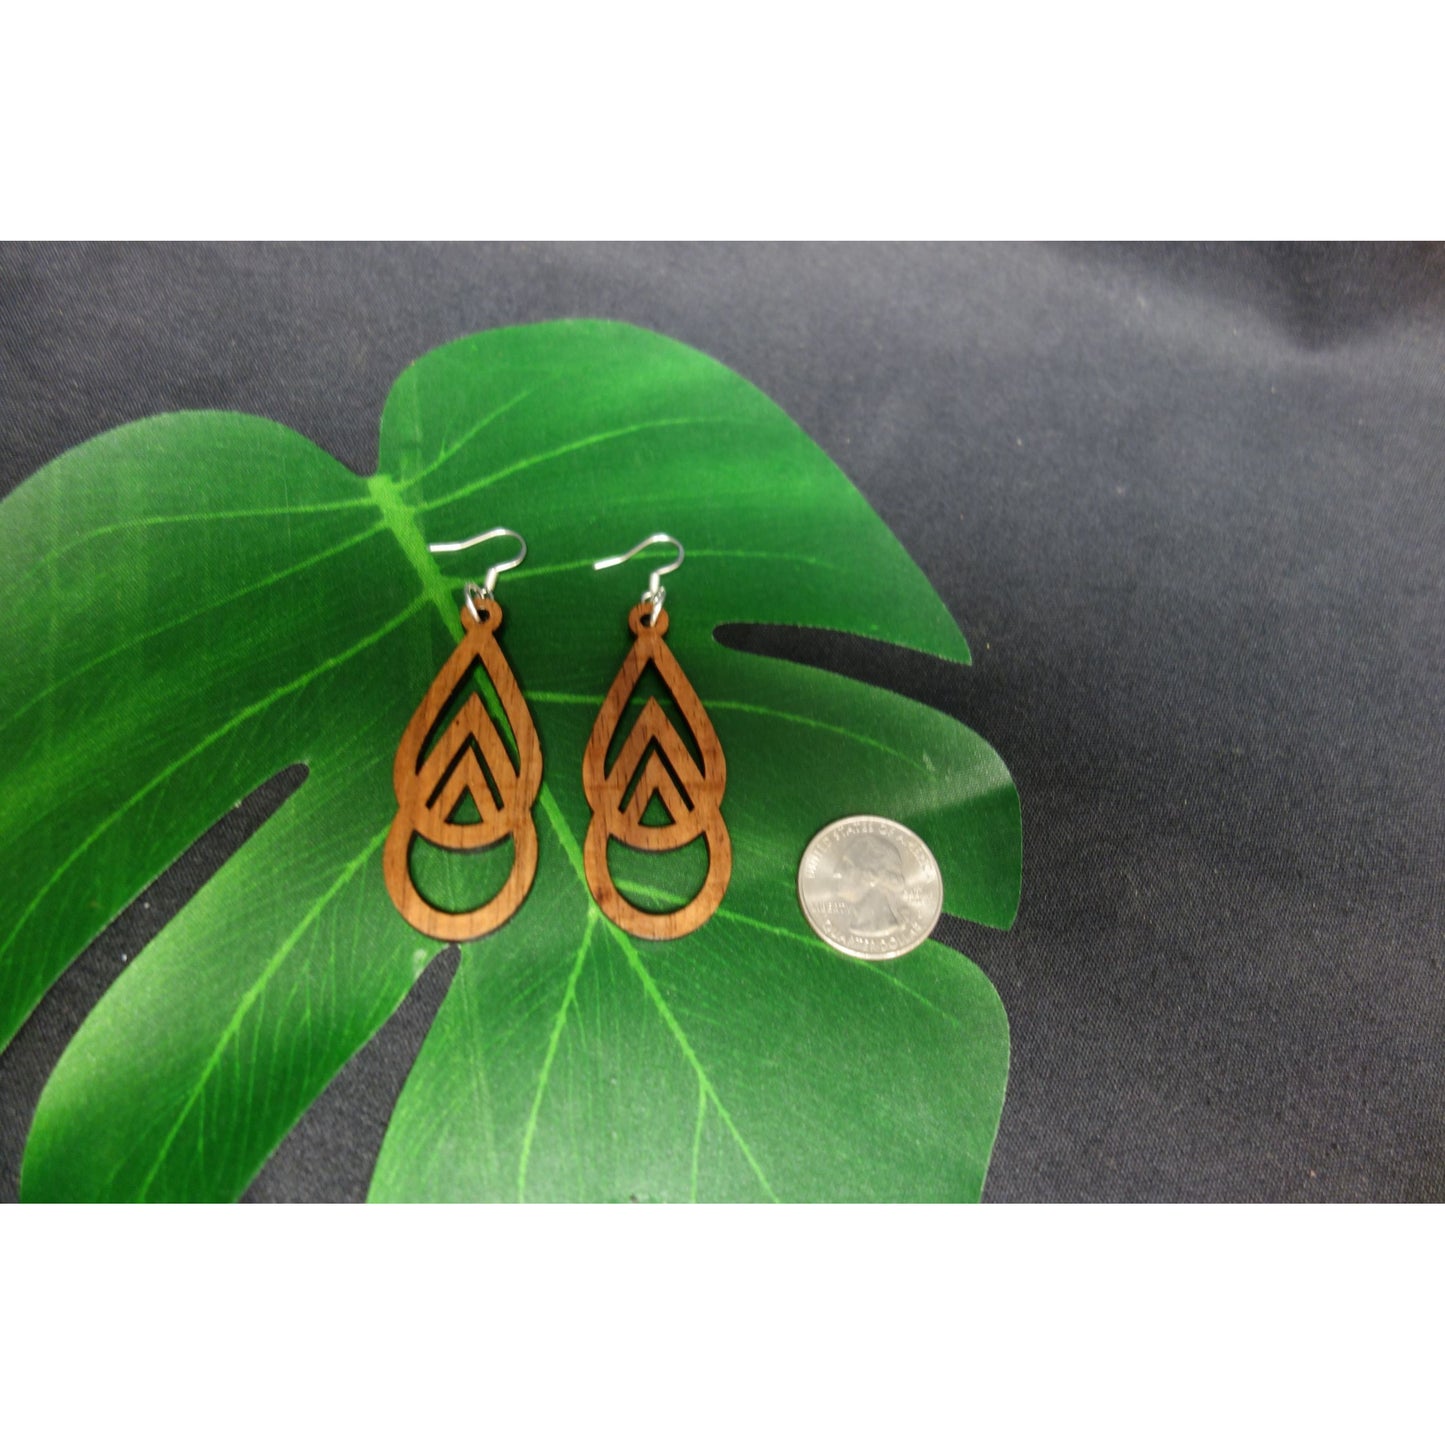 Koa Wood Mauka to Makai Triangle Earrings